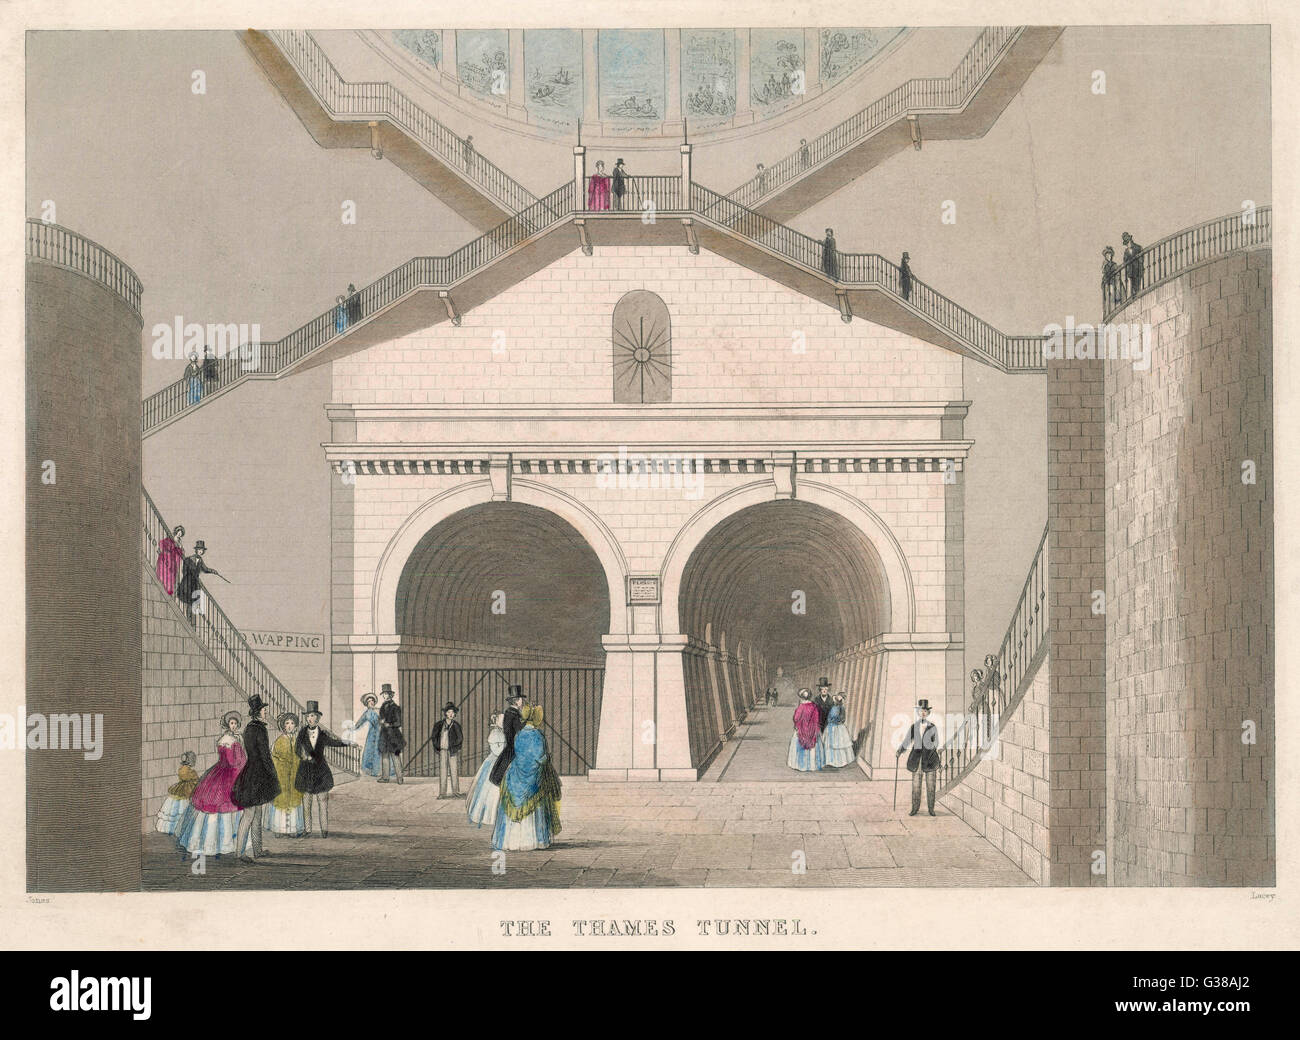 Ein Blick auf den Eingang zu den Wapping Rotherhithe-Tunnel unter der Themse, die weltweit erste Unterwasser-Tunnel, von Marc Brunel 1843 abgeschlossen. Der Tunnel wurde von Fußgängern von 1843 bis 1865, umgebaut für den Eisenbahn-Einsatz genutzt.      Datum: 1843 Stockfoto